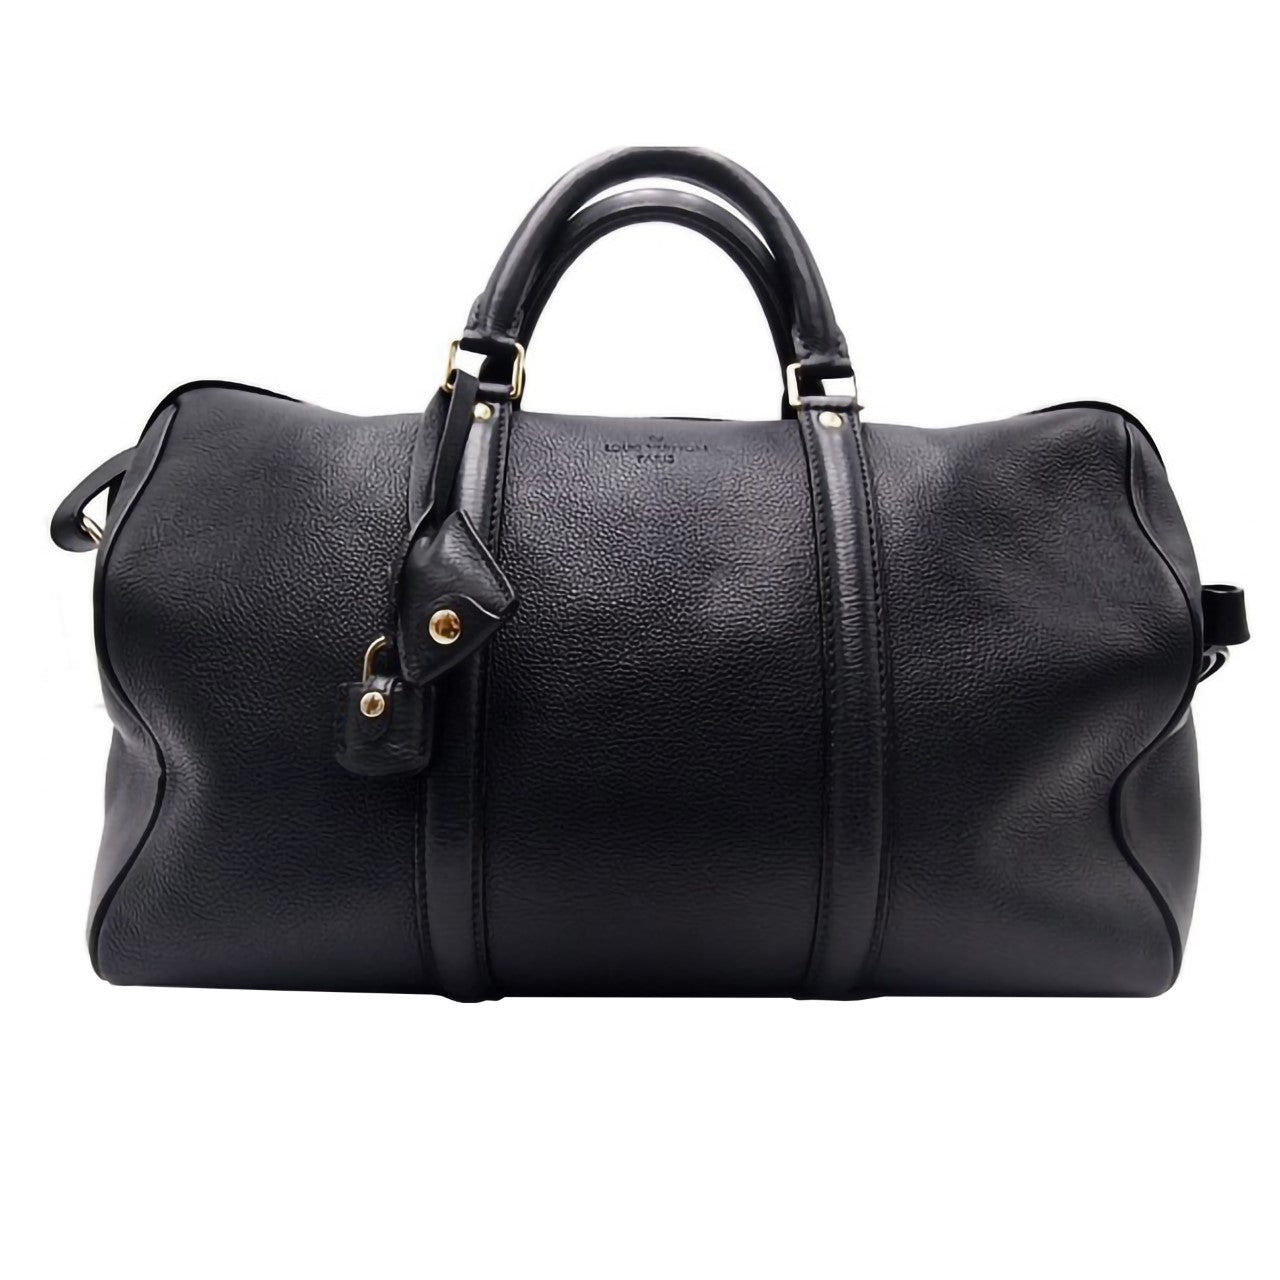 Louis Vuitton Sofia Coppola Leather Bag - '10s